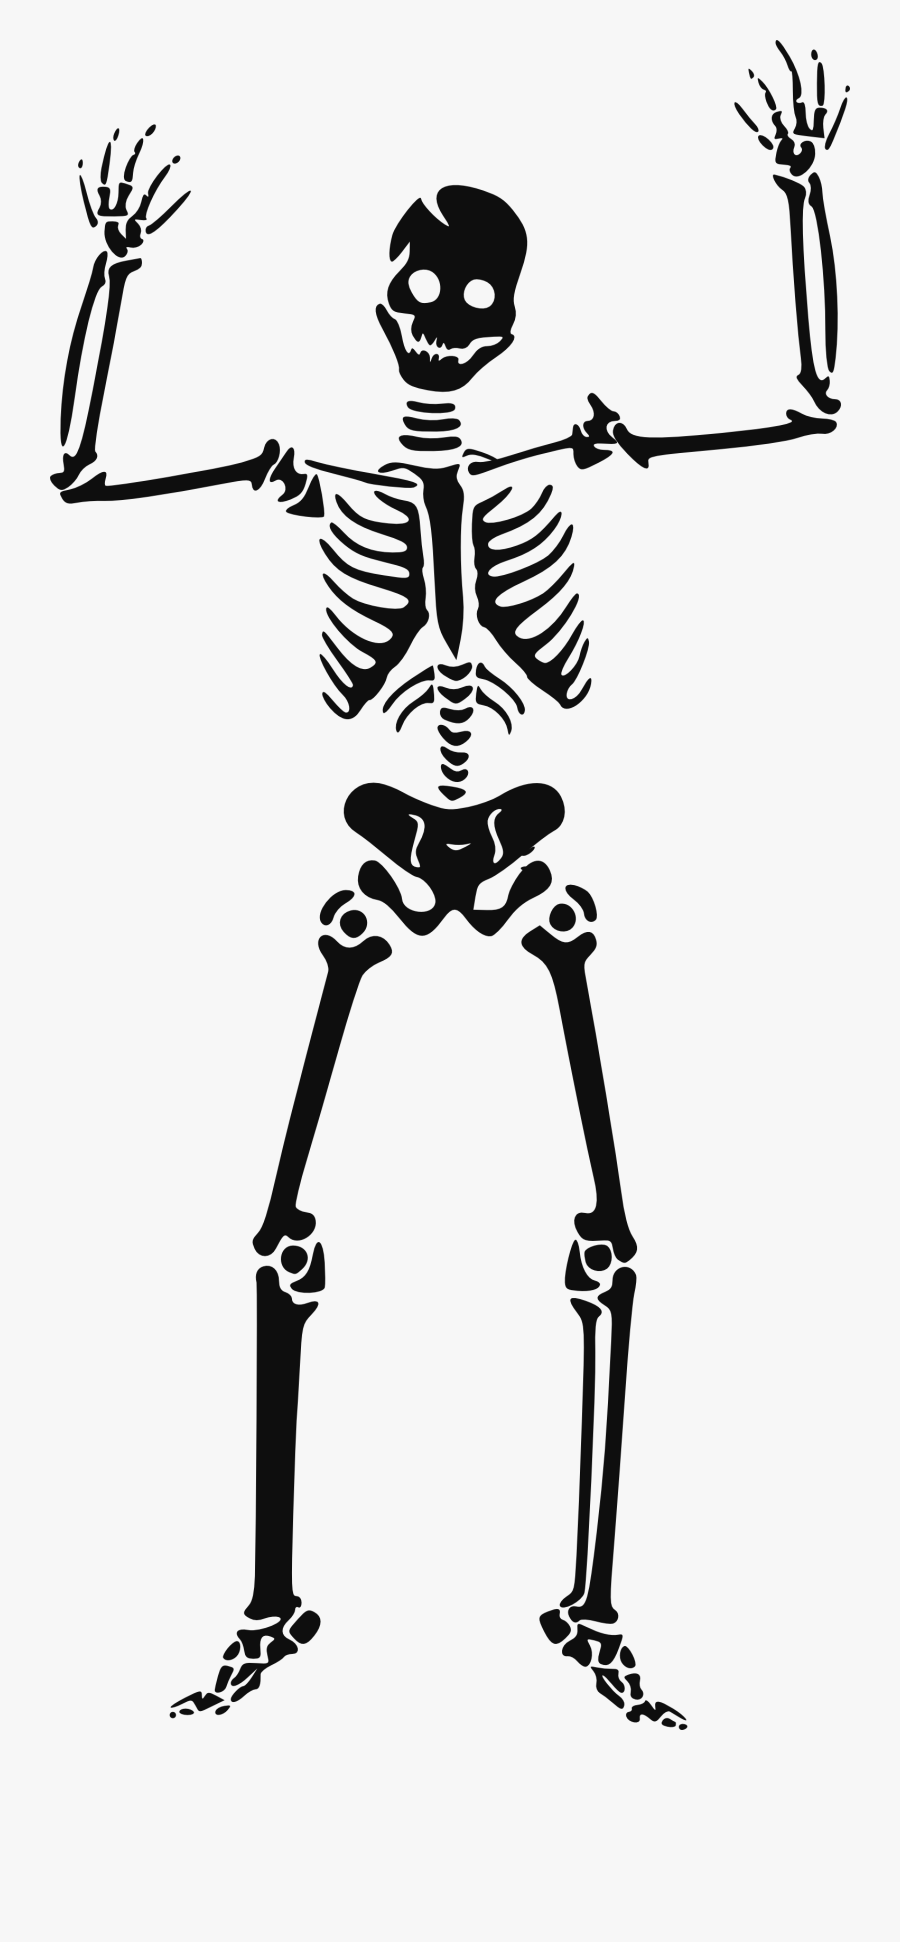 Google Clipart Public Domain - Halloween Clipart Skeleton, Transparent Clipart